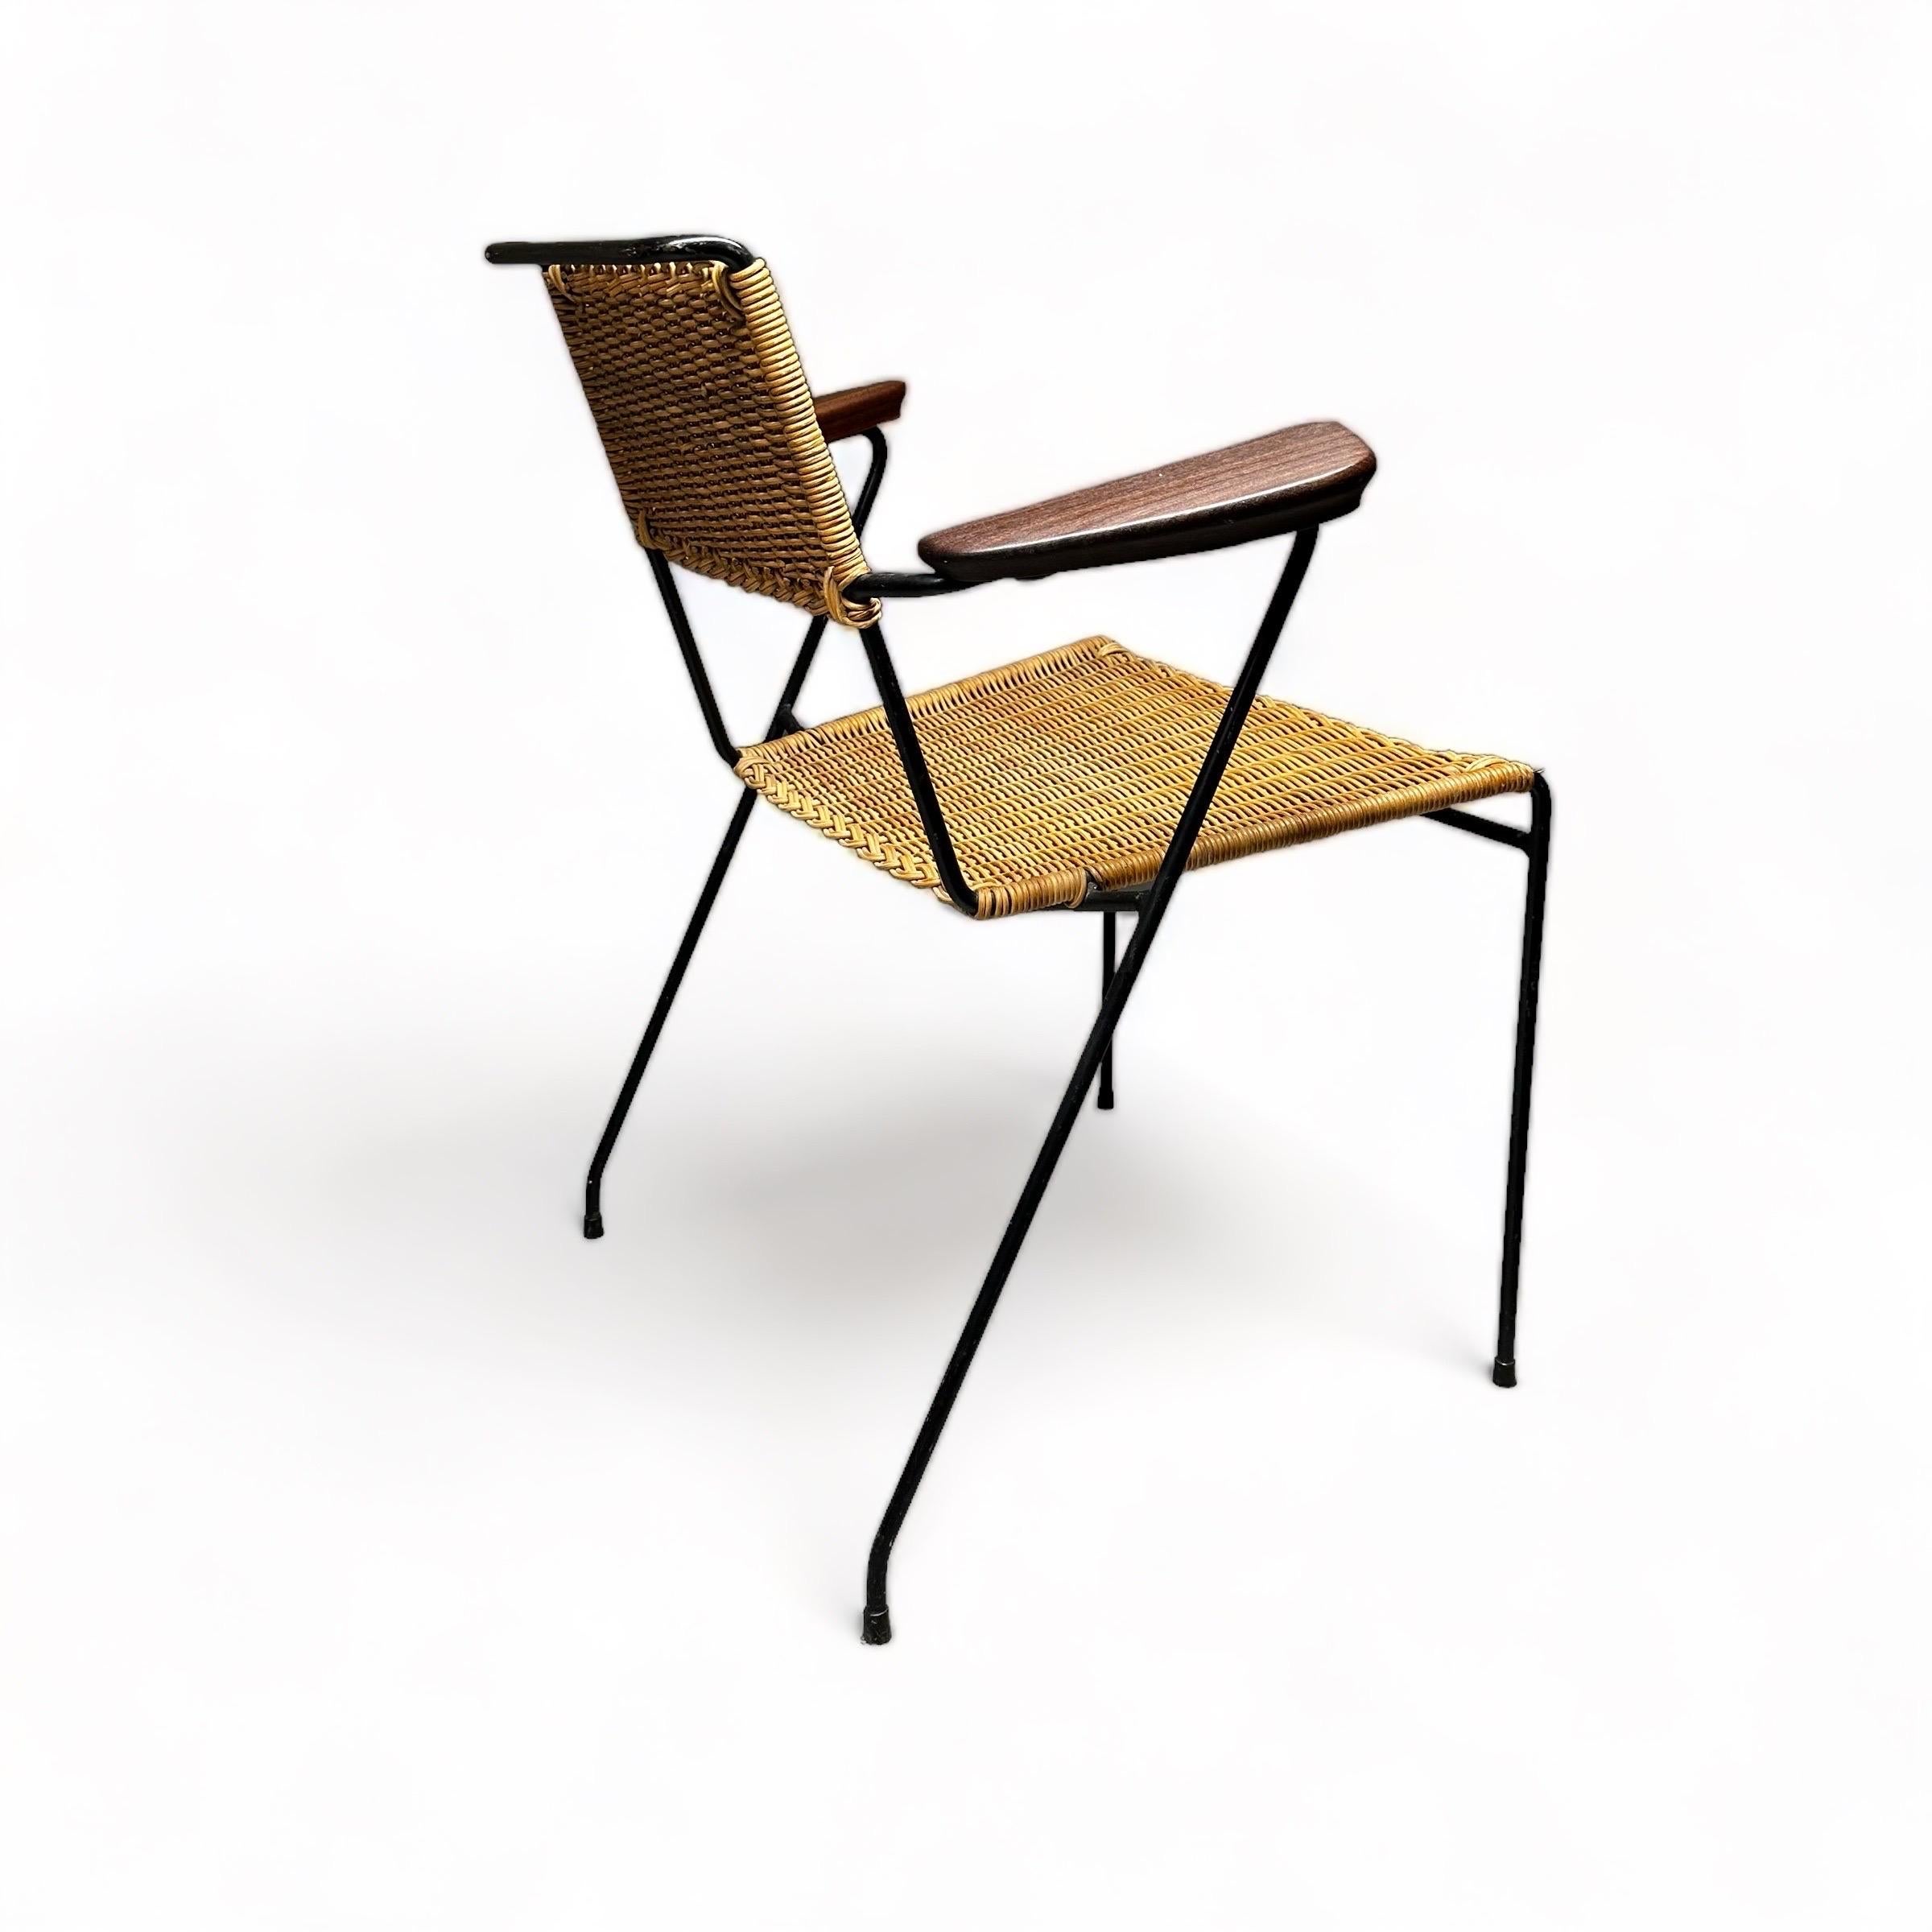 Paul Schneider von Esleben Desk Arm Chair, Germany 1955 In Good Condition For Sale In Vienna, AT